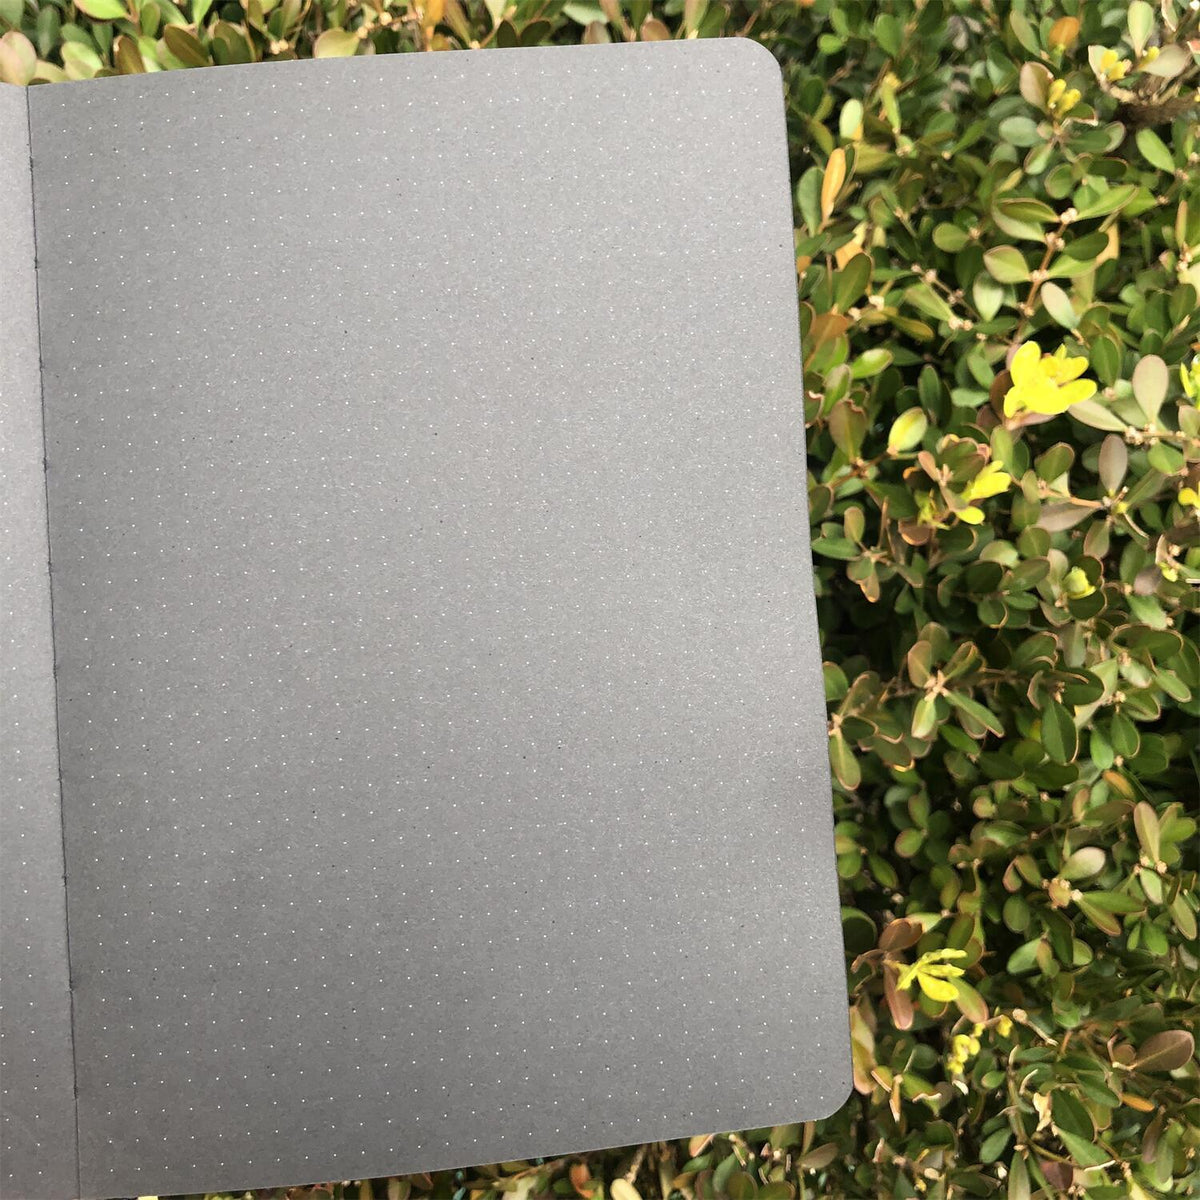 A5 Dark Mode Notebook (Black Paper)